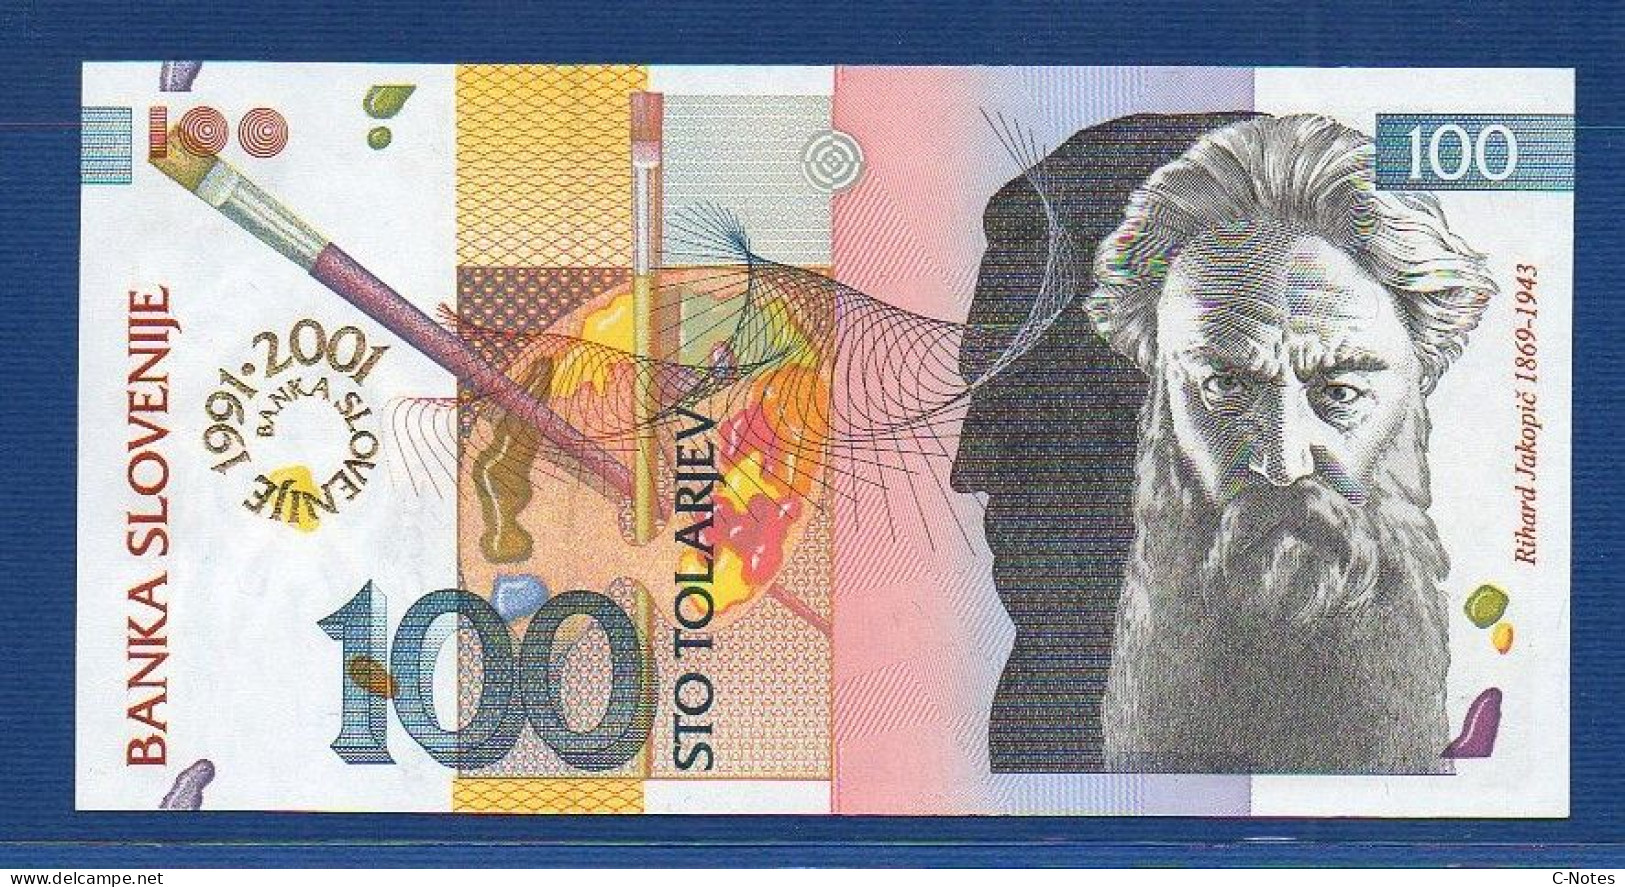 SLOVENIA - P.25 – 100 Tolarjev 2001 UNC, S/n SU007219 "10th Anniversary Of Banka Slovenije" Commemorative Issue - Slovenia